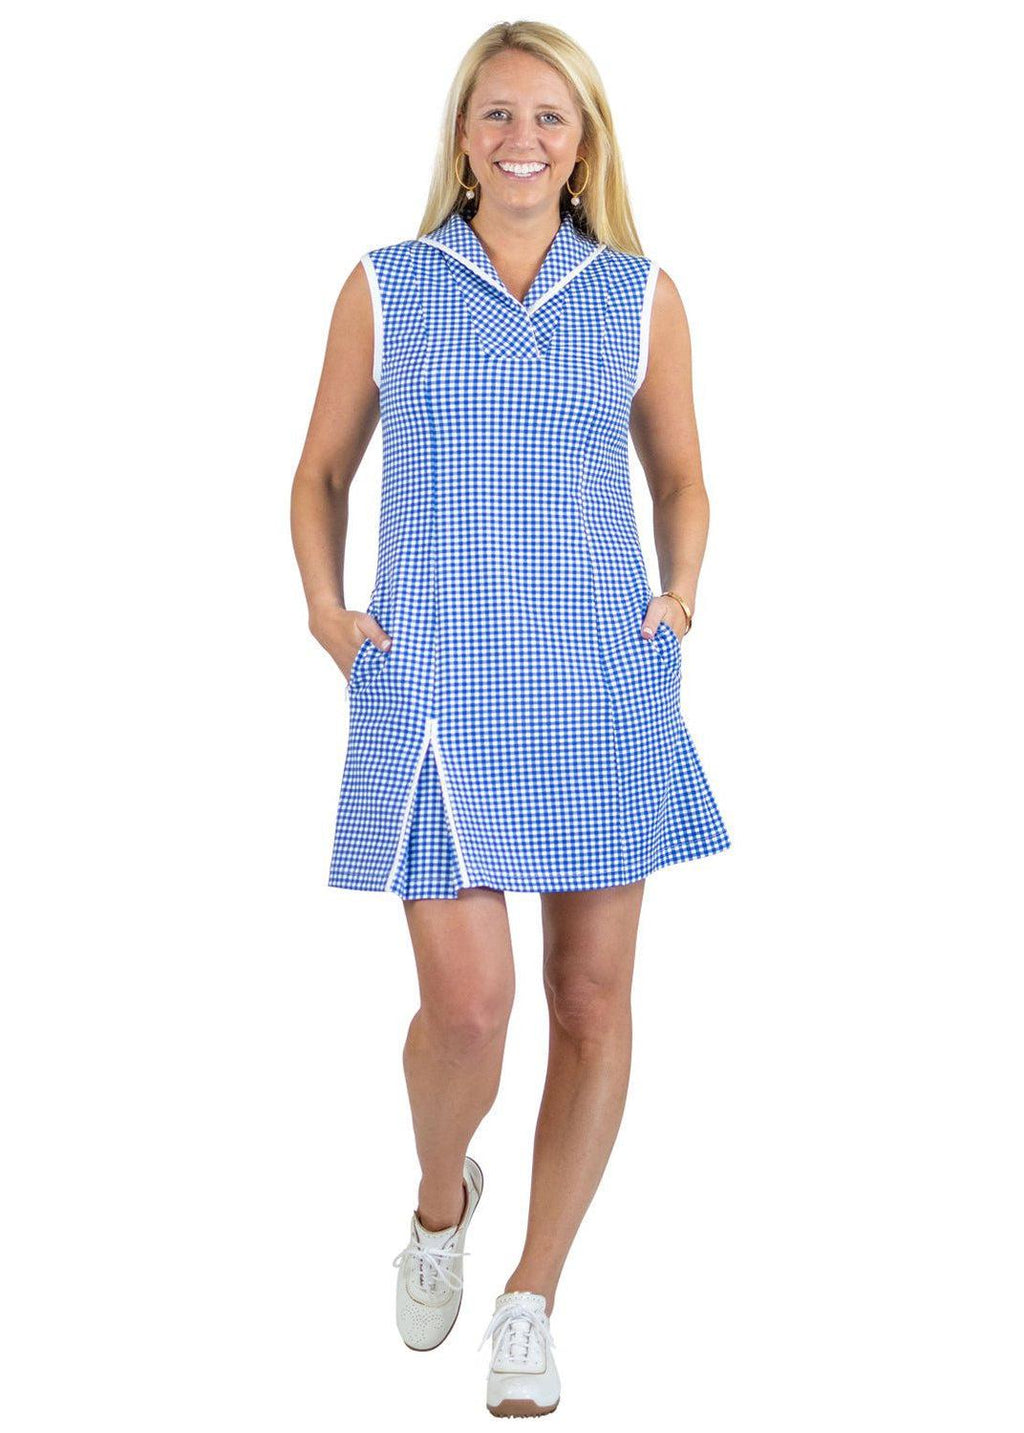 Sport Dress - Gingham Check - Blue/White